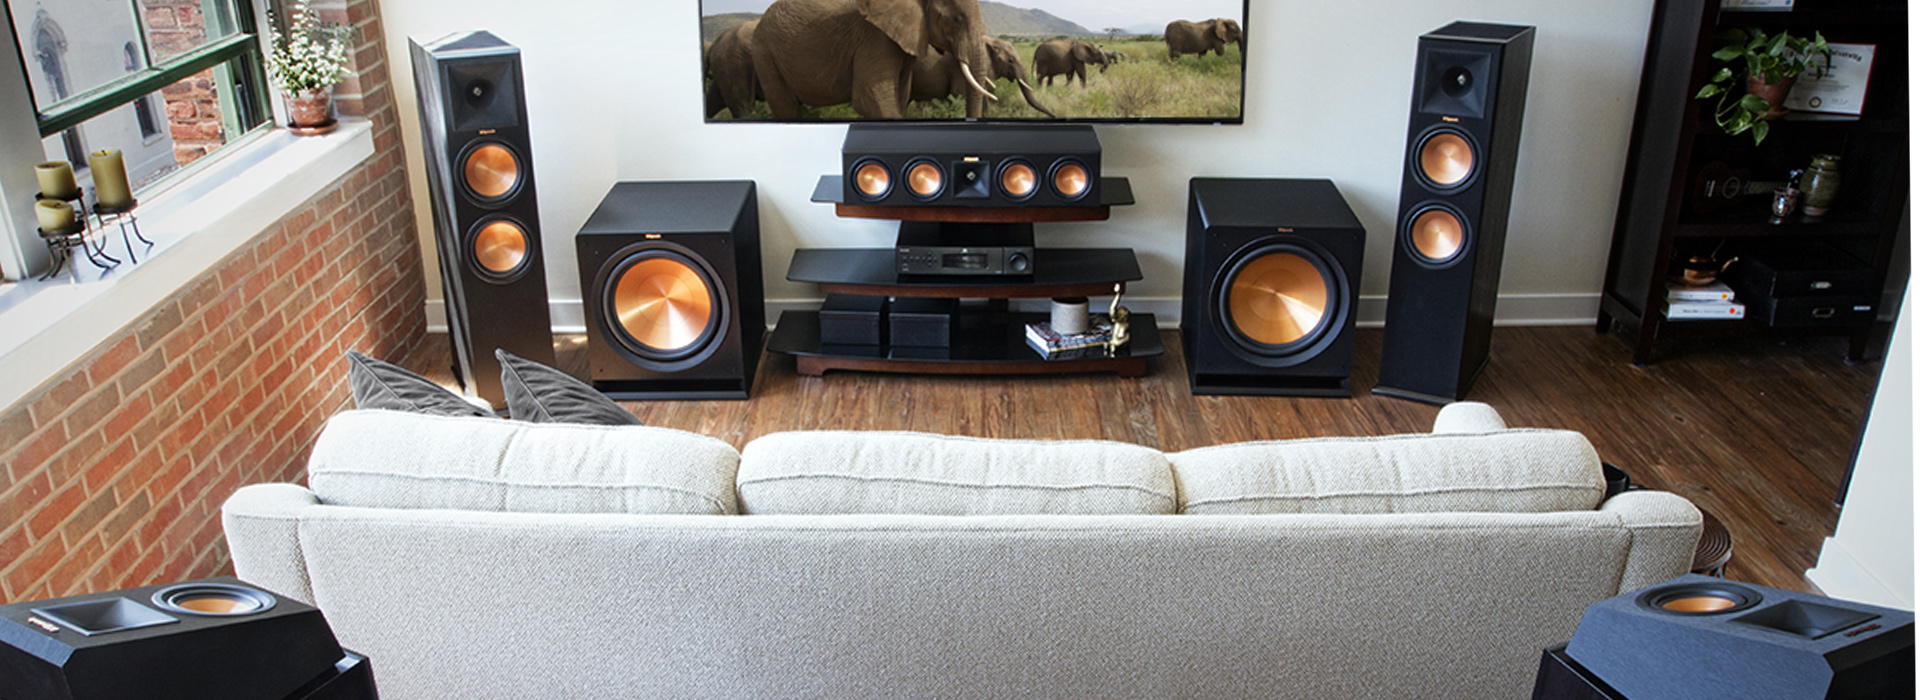 home speakers in living room